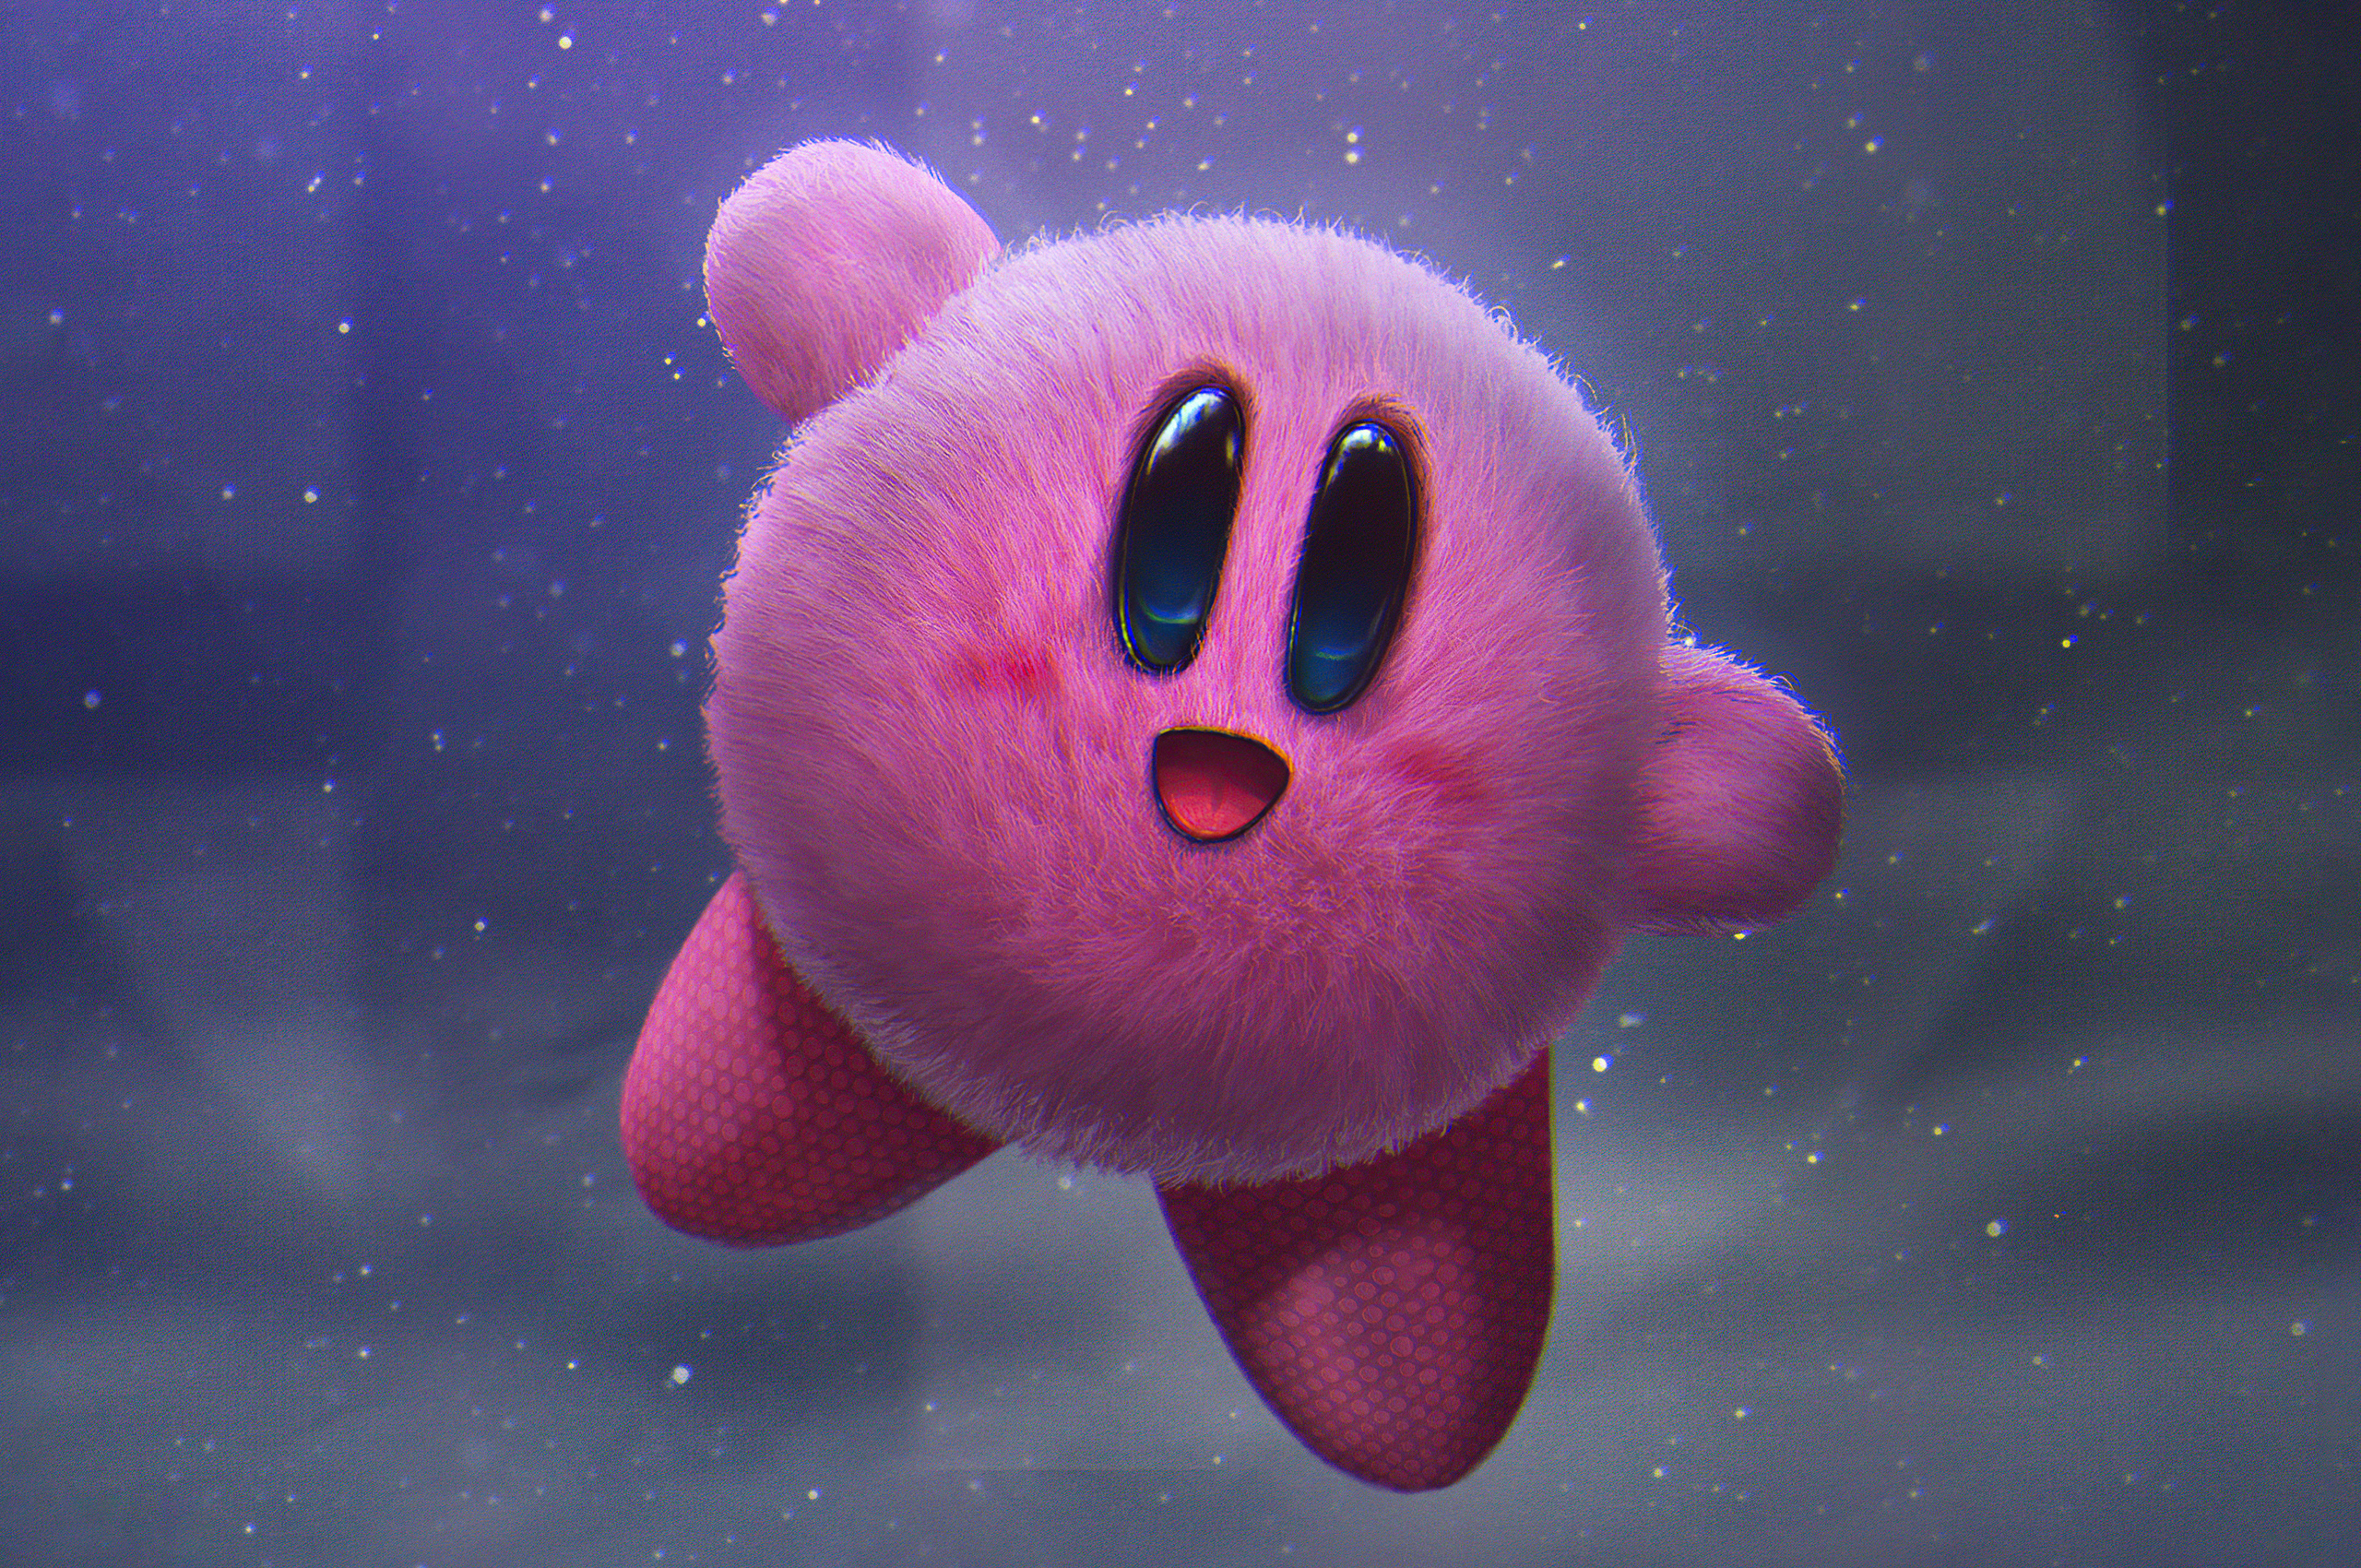 Kirby Super Smash Bros wallpaper: Siêu phẩm đối kháng Super Smash Bros đã đưa chú Kirby trở thành một nhân vật phải được ngưỡng mộ trong cộng đồng game thủ. Hãy chiêm ngưỡng những hình ảnh Kirby Super Smash Bros wallpapers với chiến thuật và sức mạnh phi thường, để thấy rõ tầm quan trọng của anh ta và cảm nhận được sức hút của trò chơi này.